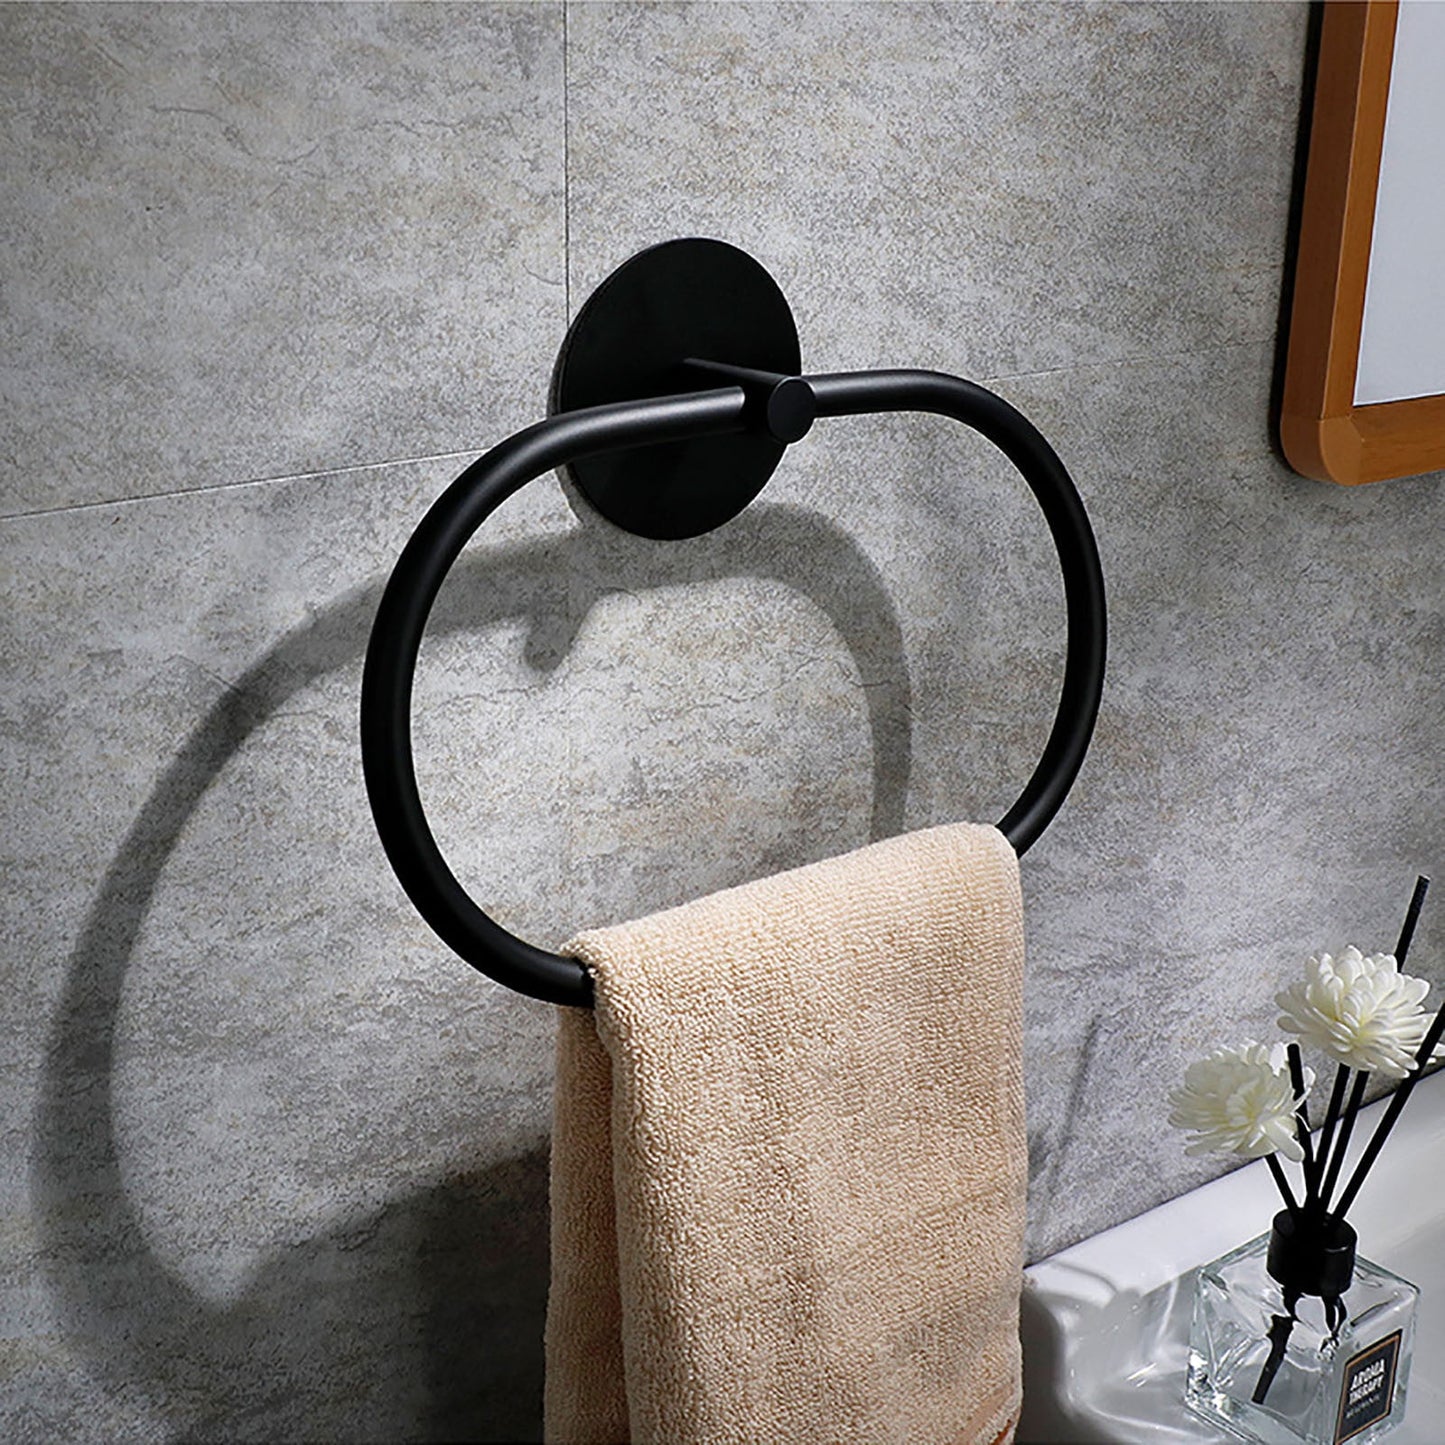 Bathroom Towel Ring Bathroom Towel Rack Adhesive Hand Towels Holder Towel Hanger Black